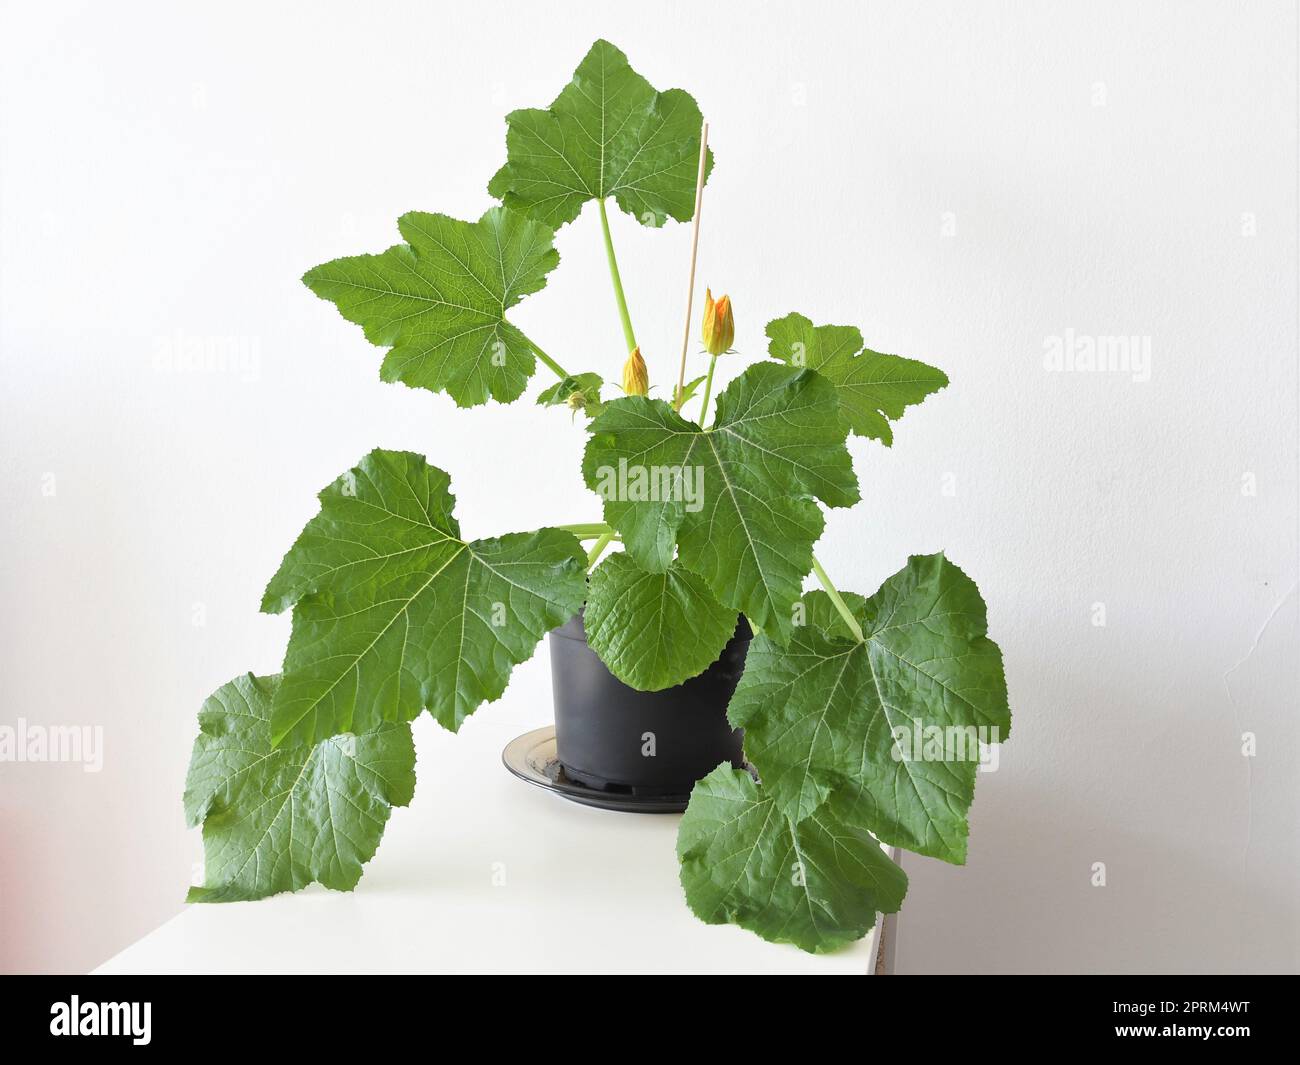 Zucchini-Zucchini-Pflanze, die in einem Topf in Innenräumen angebaut wird. Große grüne Blätter, in einem schwarzen Topf gezüchtet, isoliert auf weißem Hintergrund. Querformat. Stockfoto